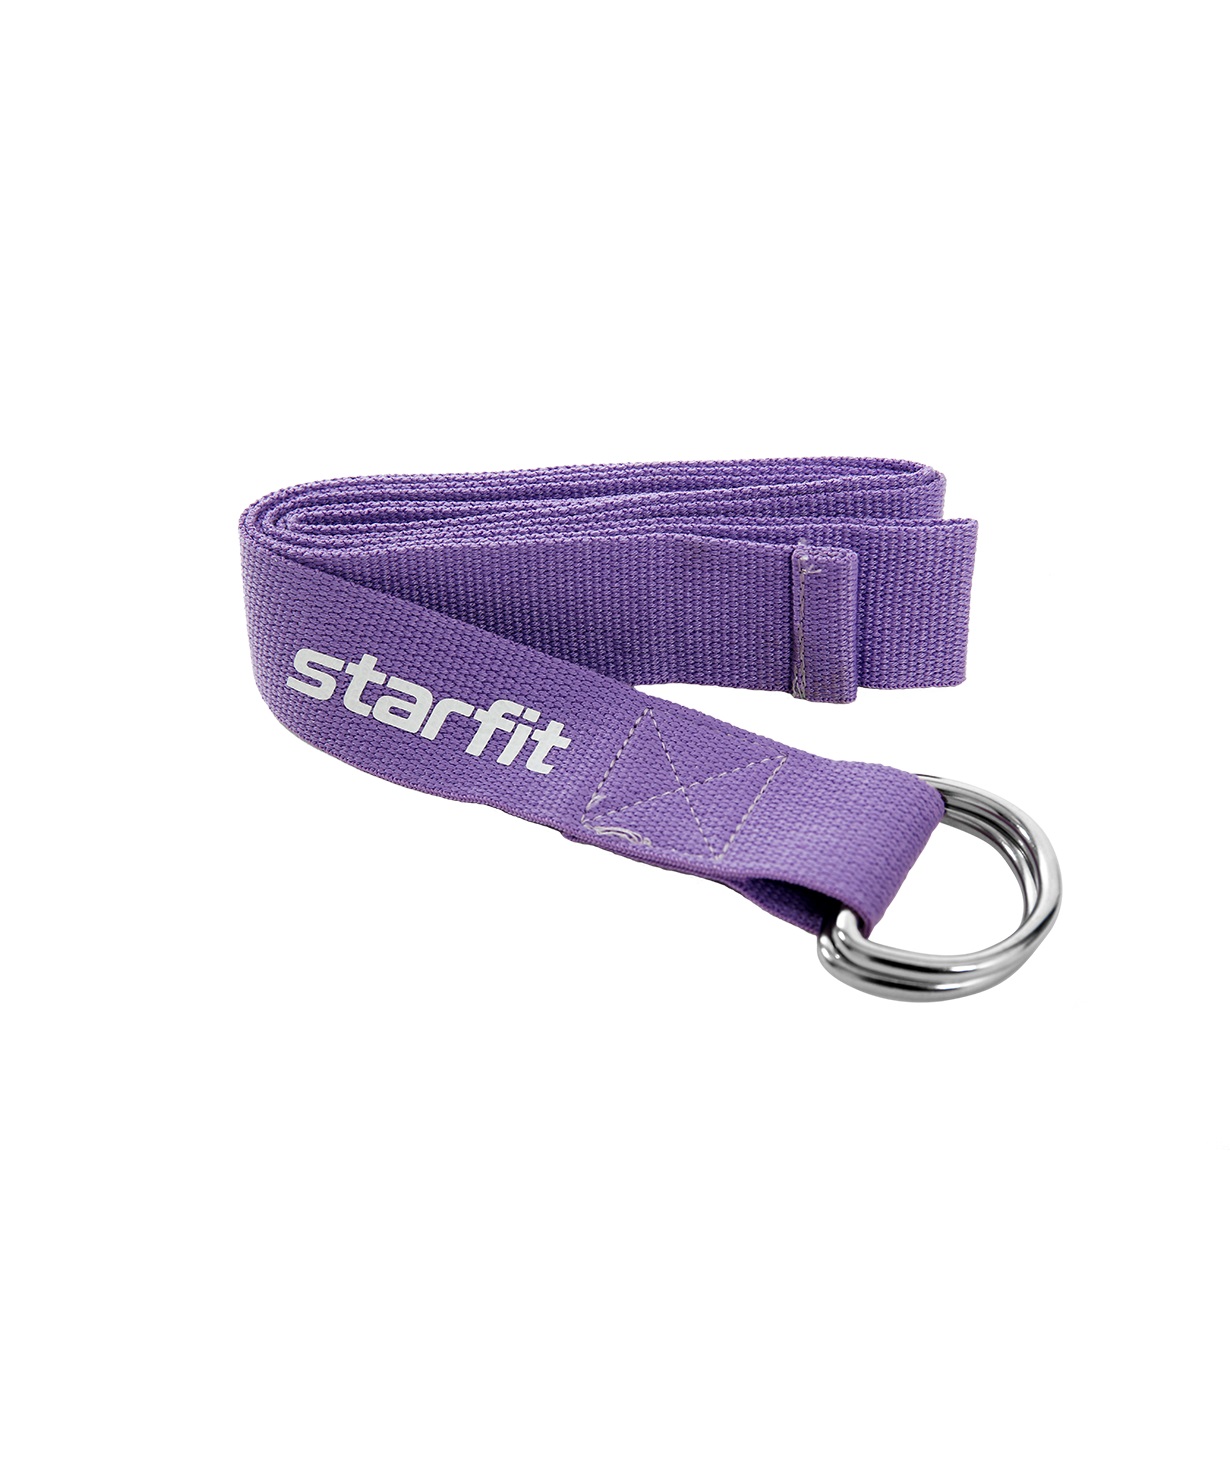 фото Ремень для йоги starfit core yb-100 186 см, хлопок, фиолетовый пастель